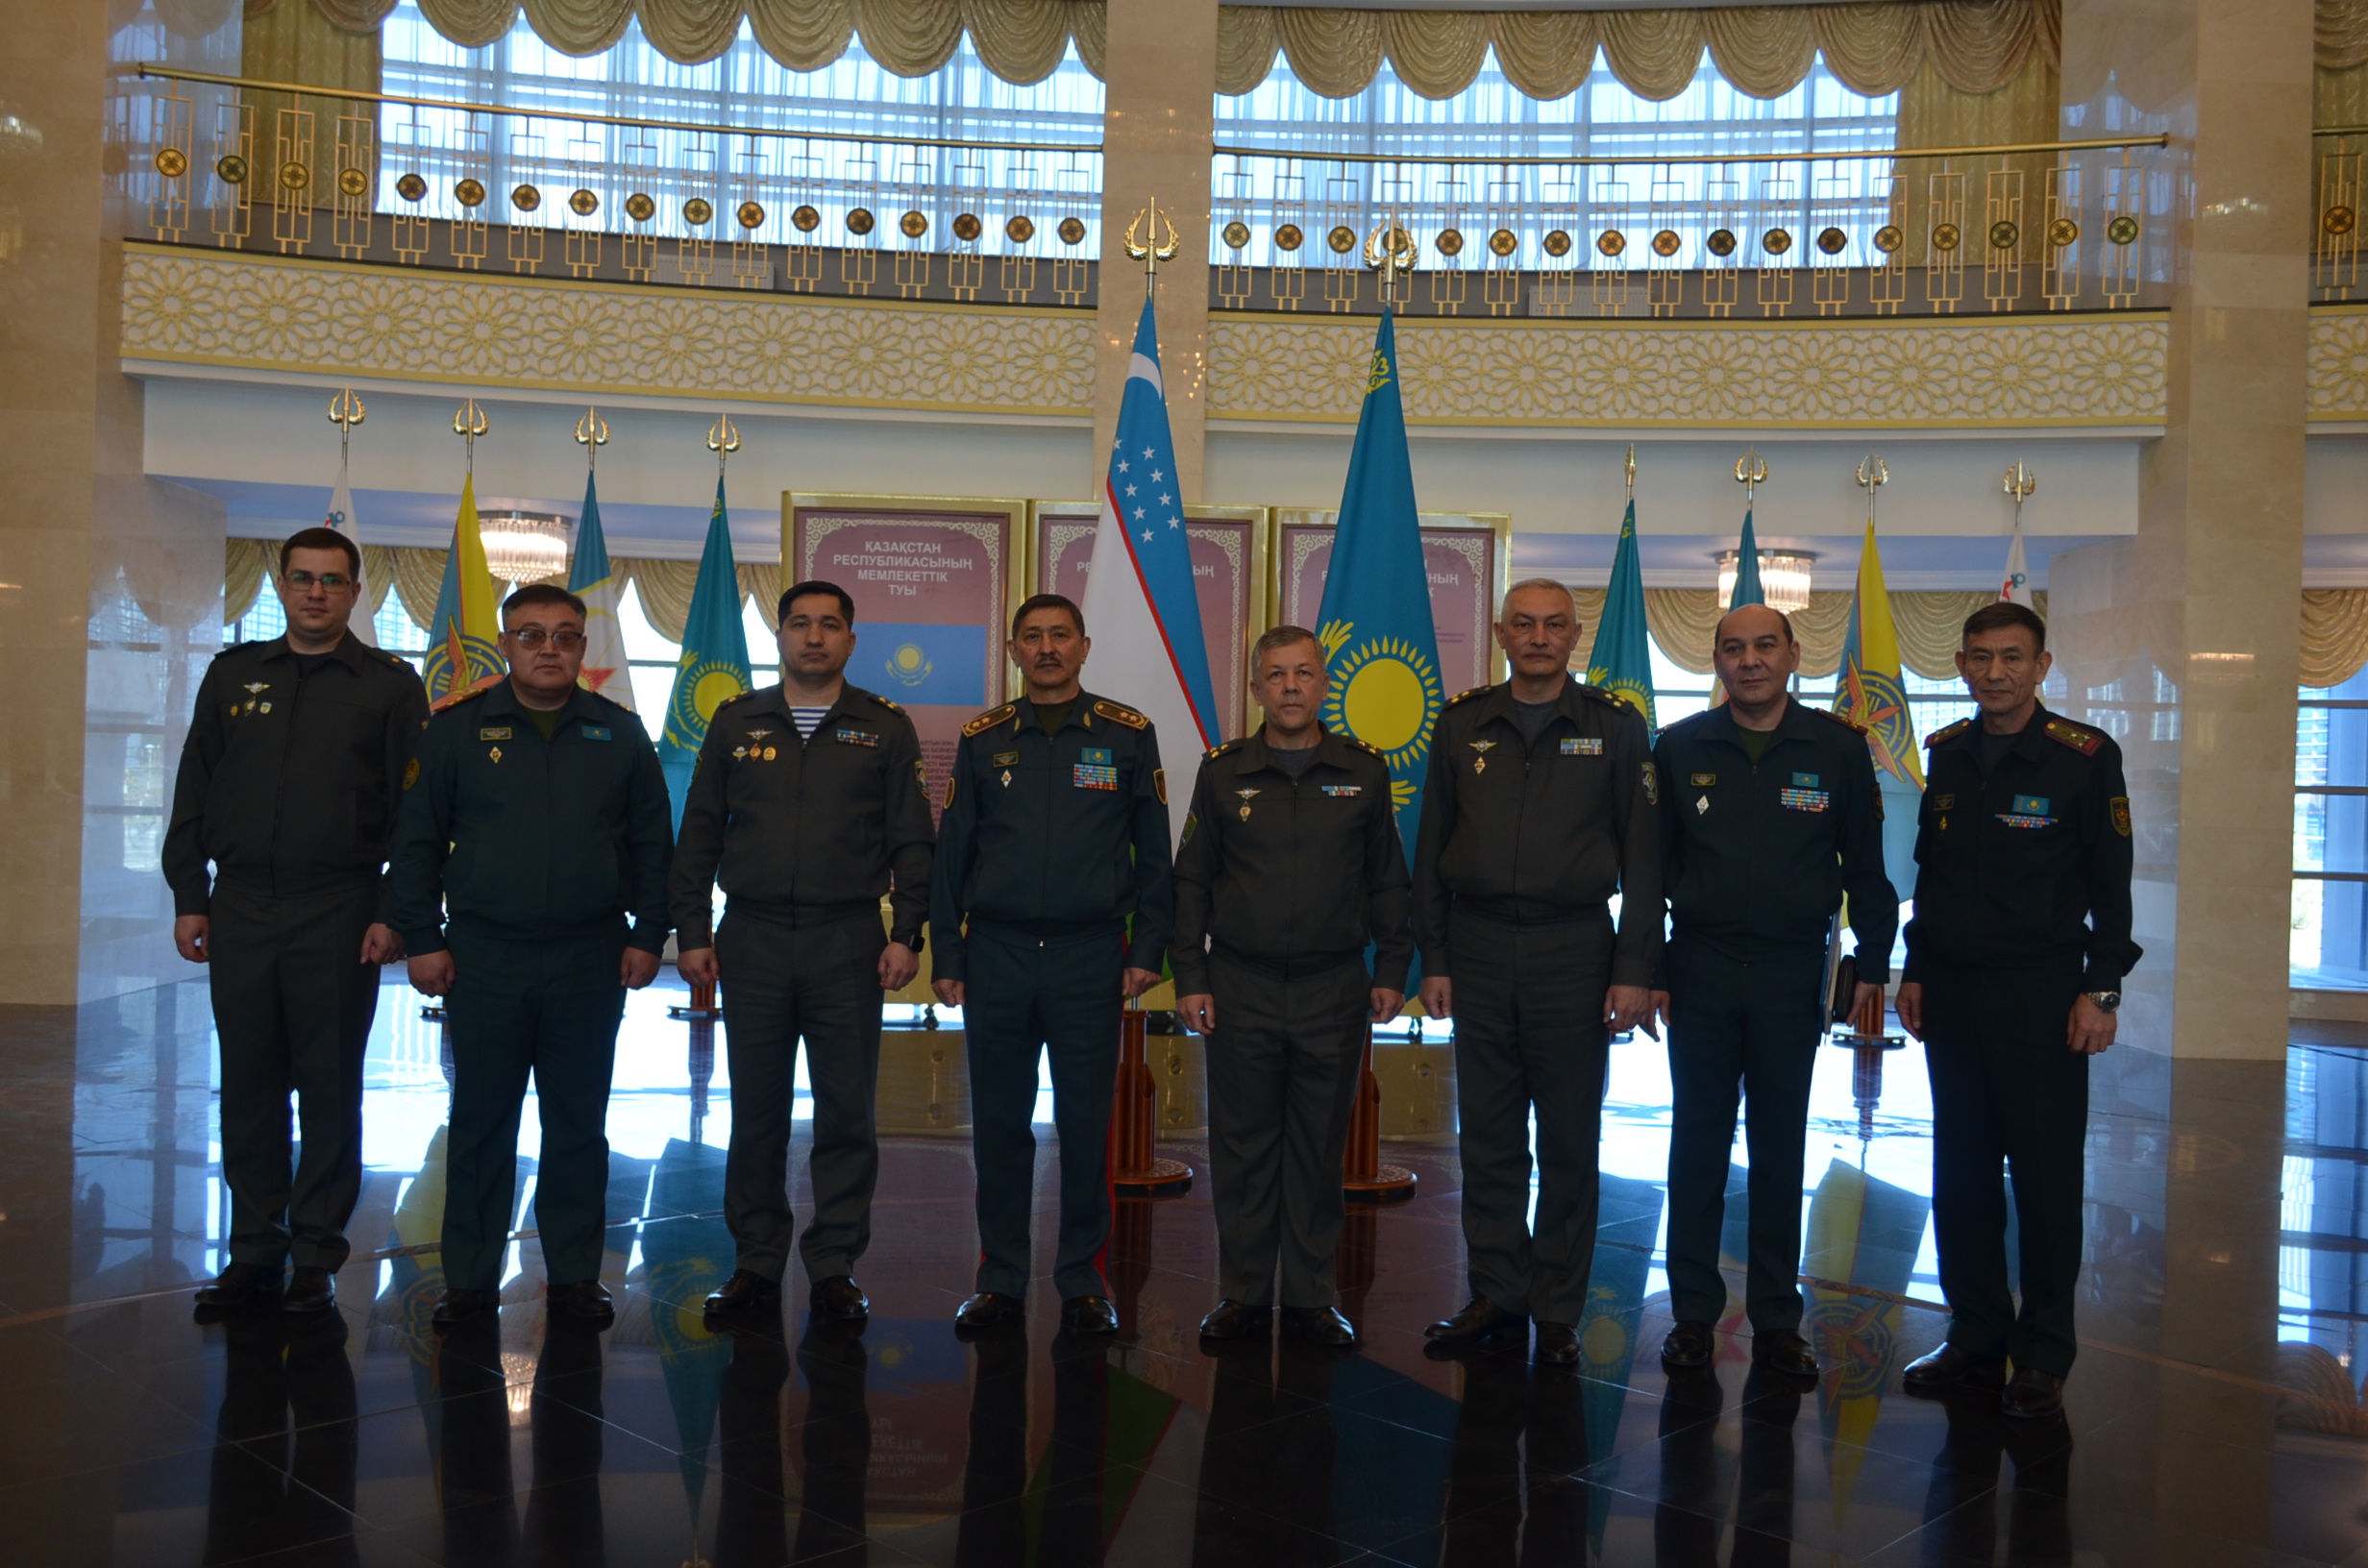 Национальный университет обороны посетили коллеги из Узбекистана